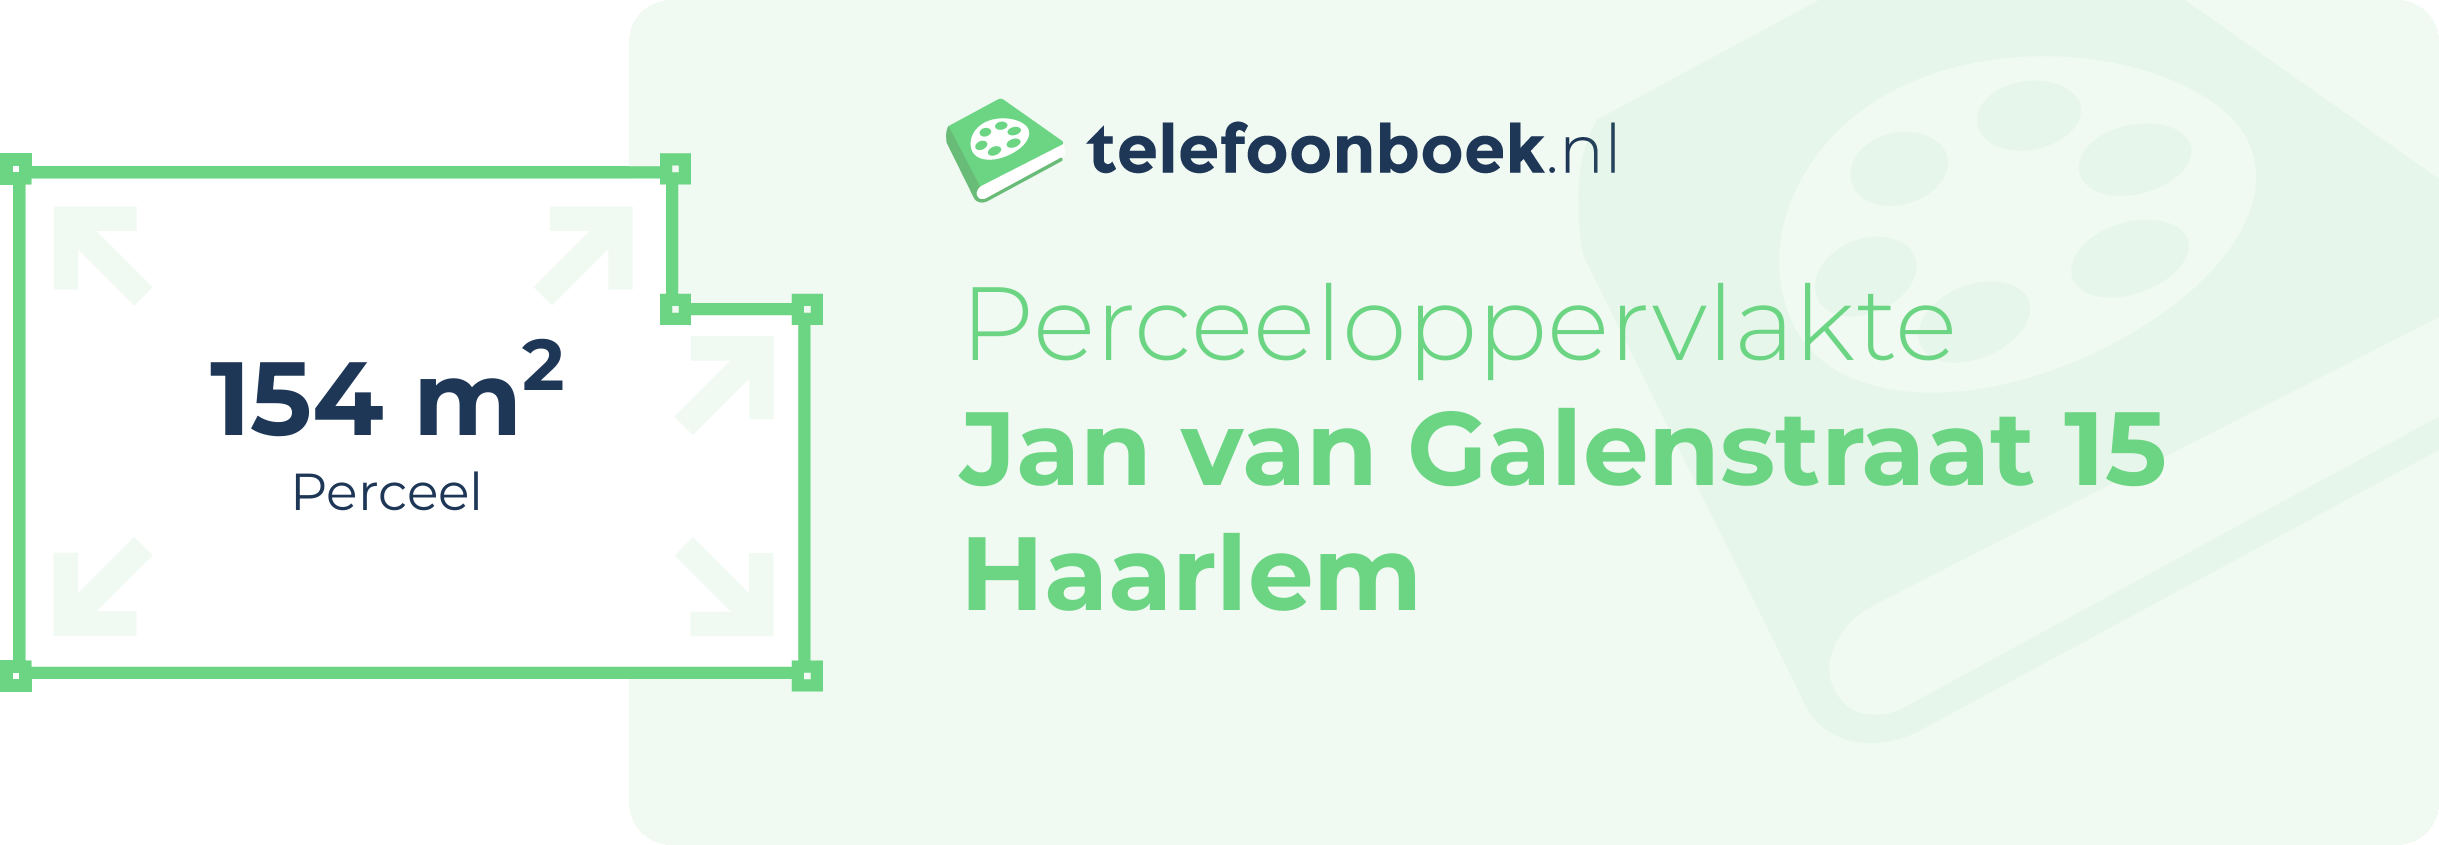 Perceeloppervlakte Jan Van Galenstraat 15 Haarlem